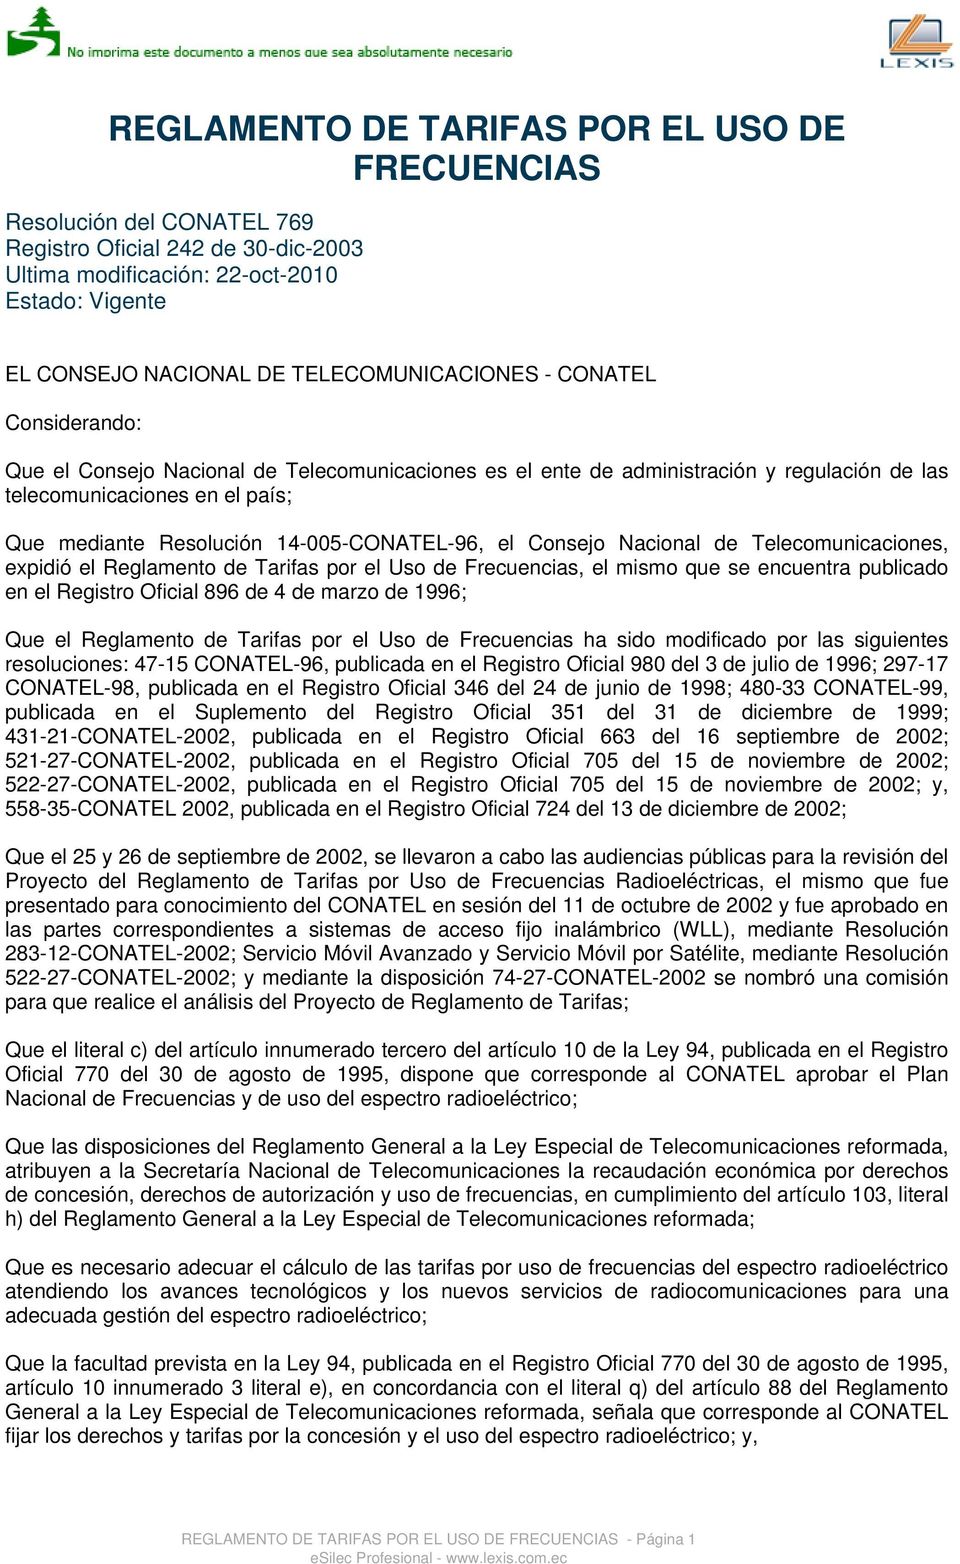 14-005-CONATEL-96, el Consejo Nacional de Telecomunicaciones, expidió el Reglamento de Tarifas por el Uso de Frecuencias, el mismo que se encuentra publicado en el Registro Oficial 896 de 4 de marzo